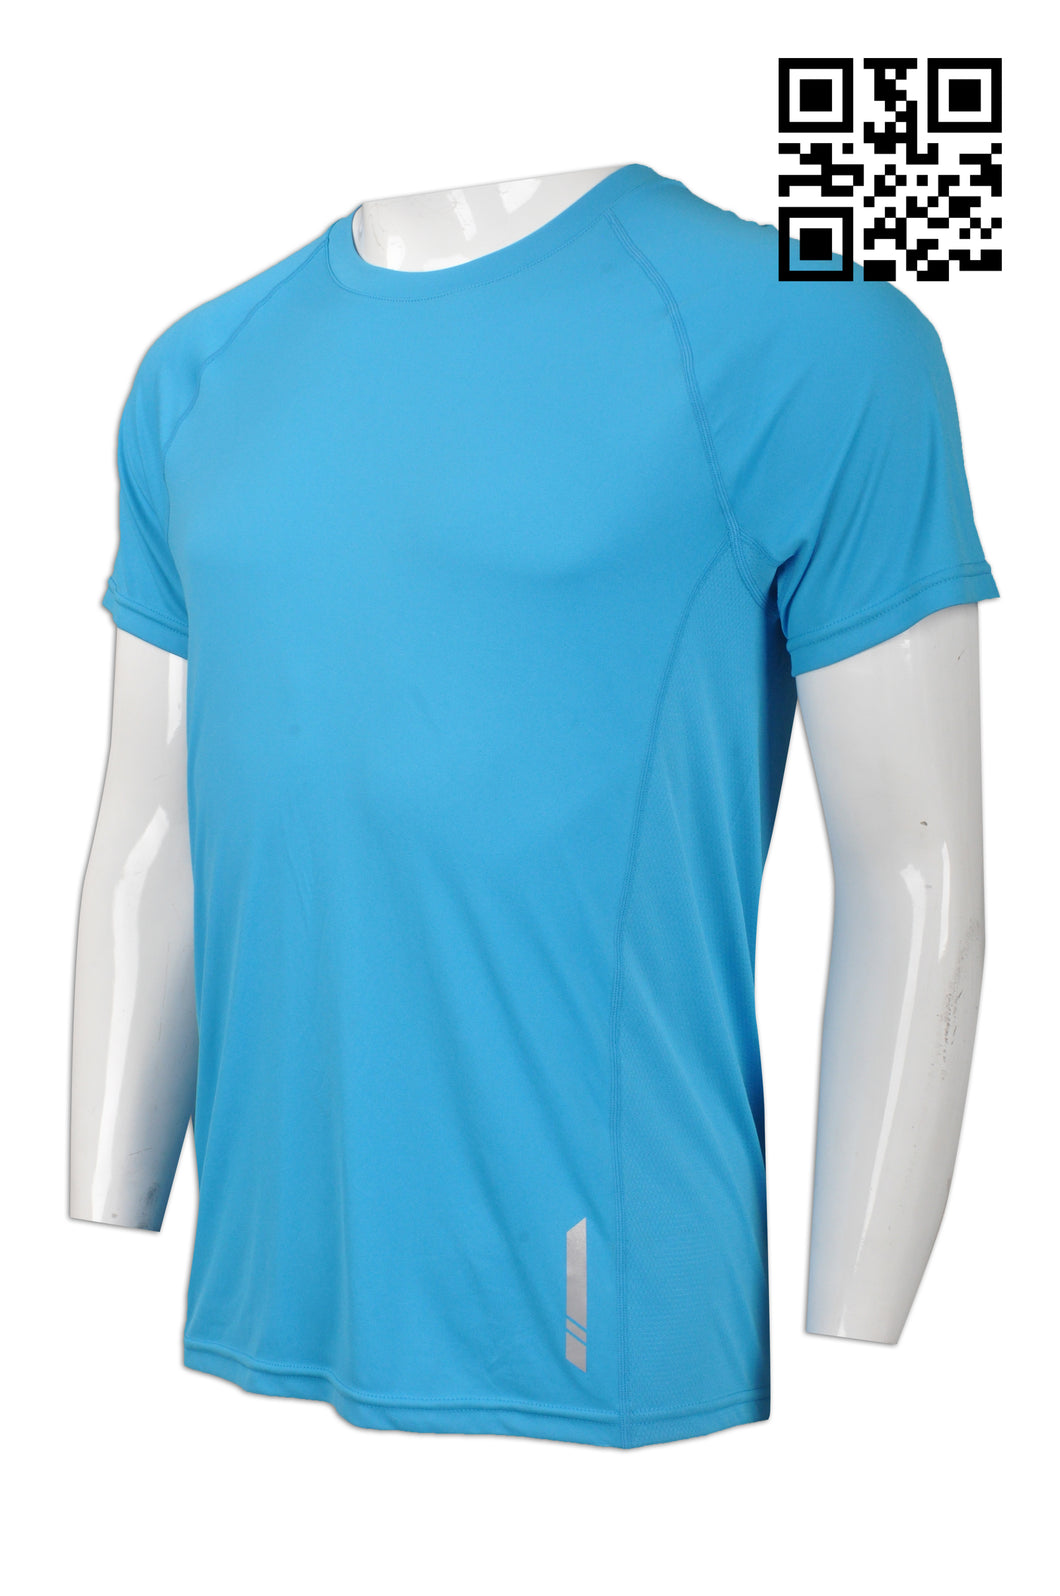 W202 訂做男裝功能性運動衫 自製反光效果功能性運動衫 設計功能性運動衫 功能性運動衫專門店 天空藍色